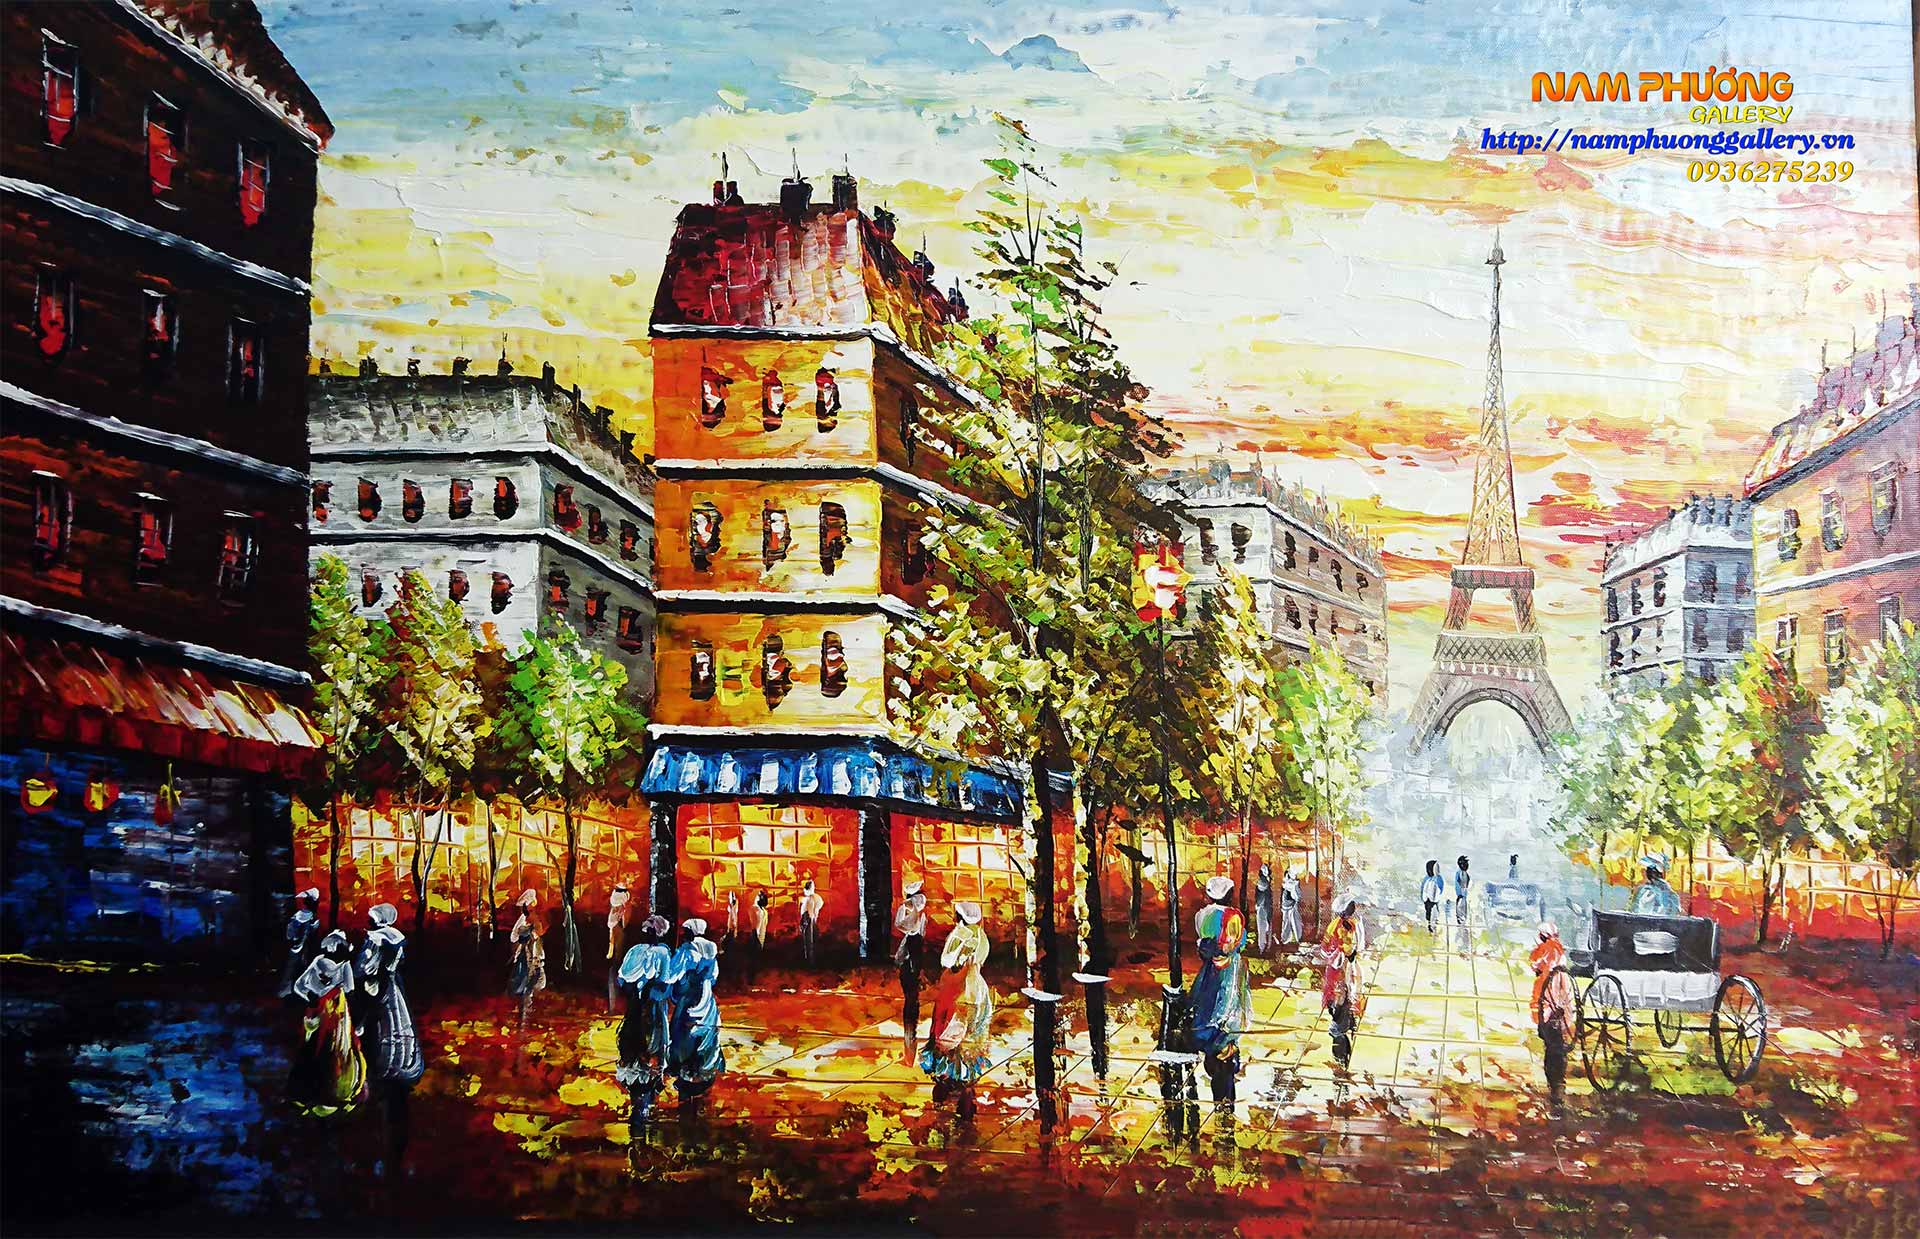 Phong cảnh thành phố Paris - Vẽ sơn dầu: Bạn đam mê vẻ đẹp của thành phố tình yêu Paris nhưng chưa có cơ hội đến thăm? Hãy thưởng lãm những bức tranh phong cảnh thành phố Paris được thể hiện bằng nghệ thuật vẽ sơn dầu. Sự đẹp tuyệt trần của thành phố ánh sáng đang chờ đón bạn!